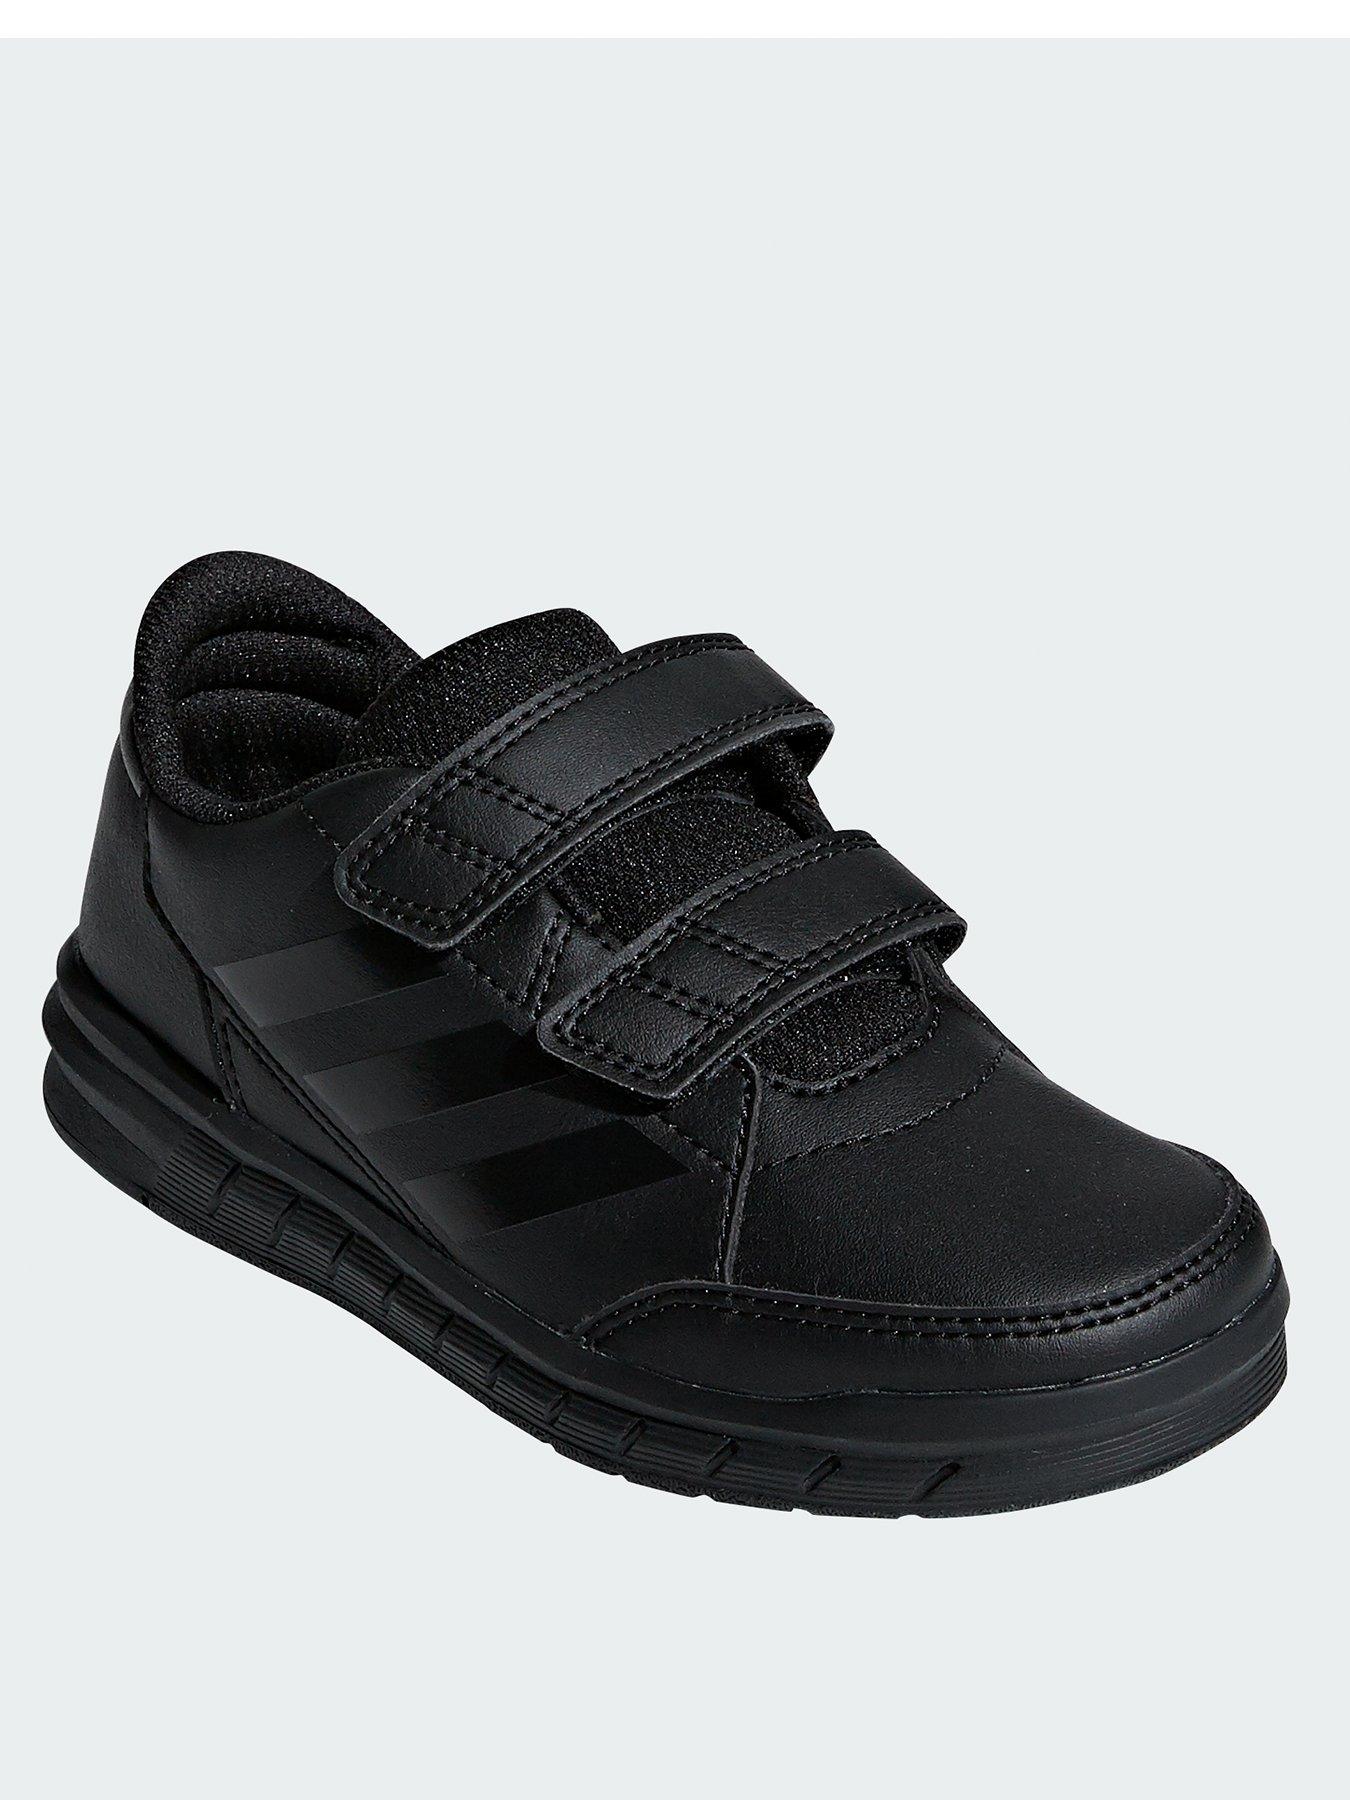 adidas Altarun Junior Trainers - Black 